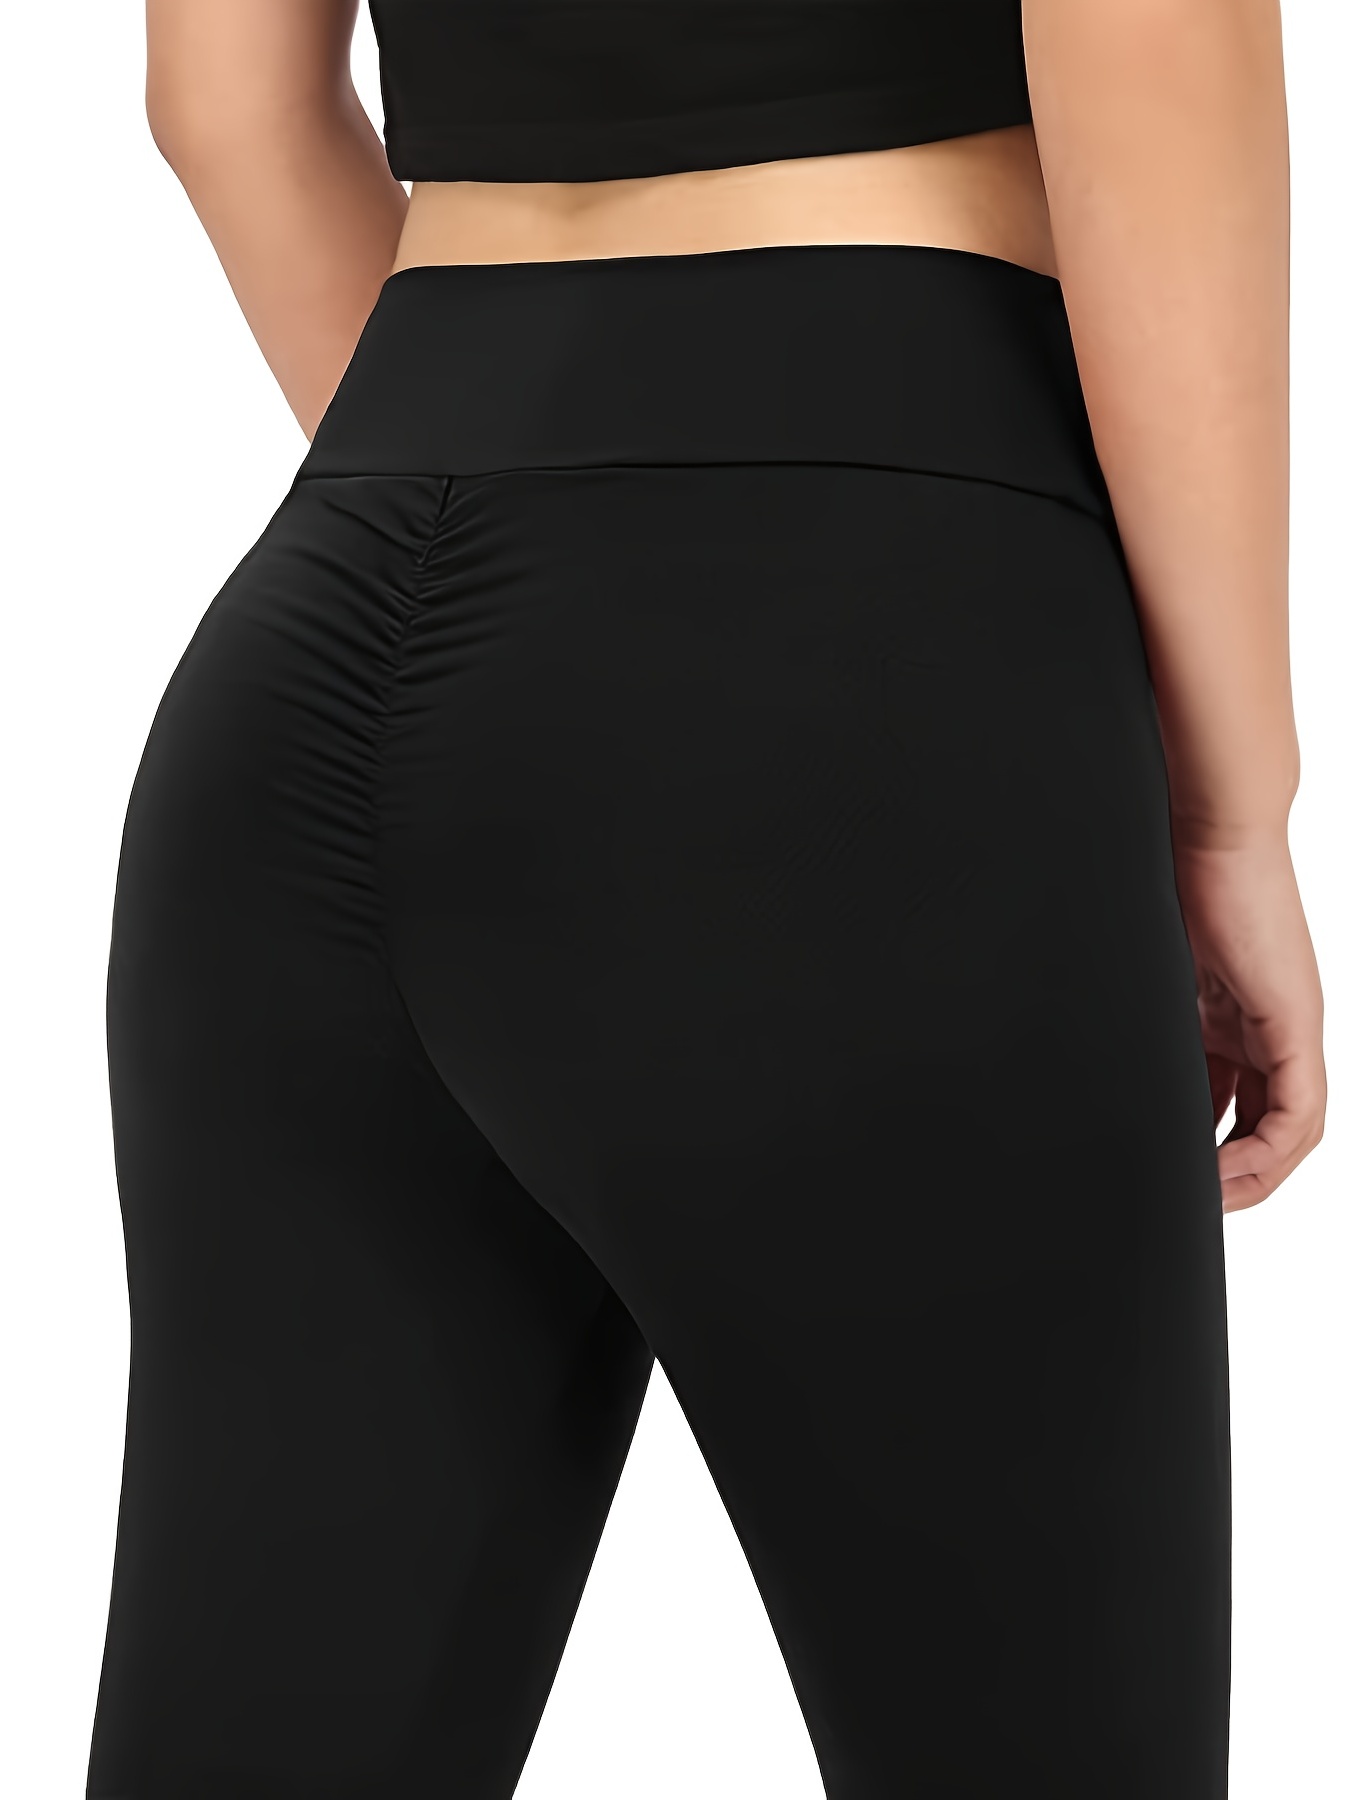 Women's Capri Yoga Pants  Small-Large 